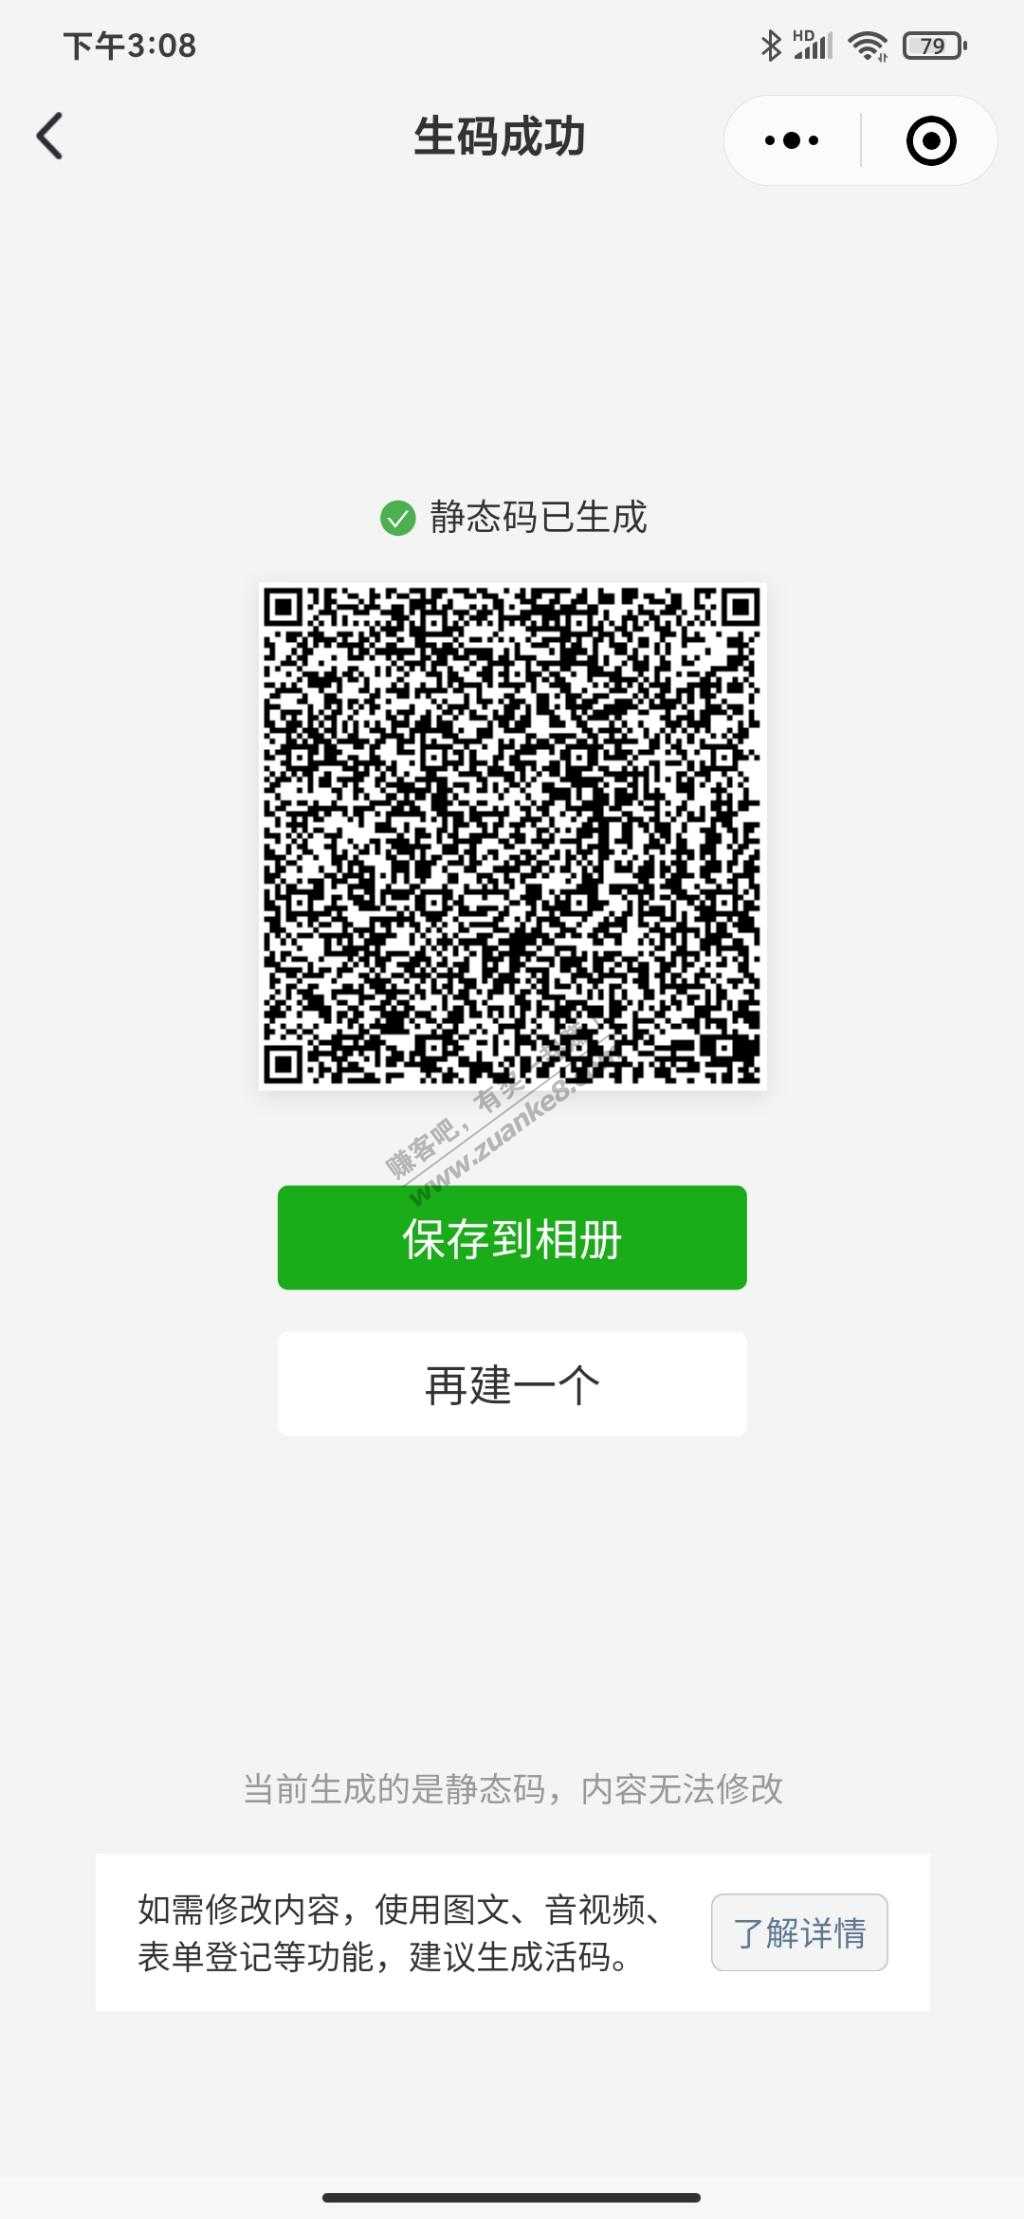 招商深圳分行30话费-惠小助(52huixz.com)